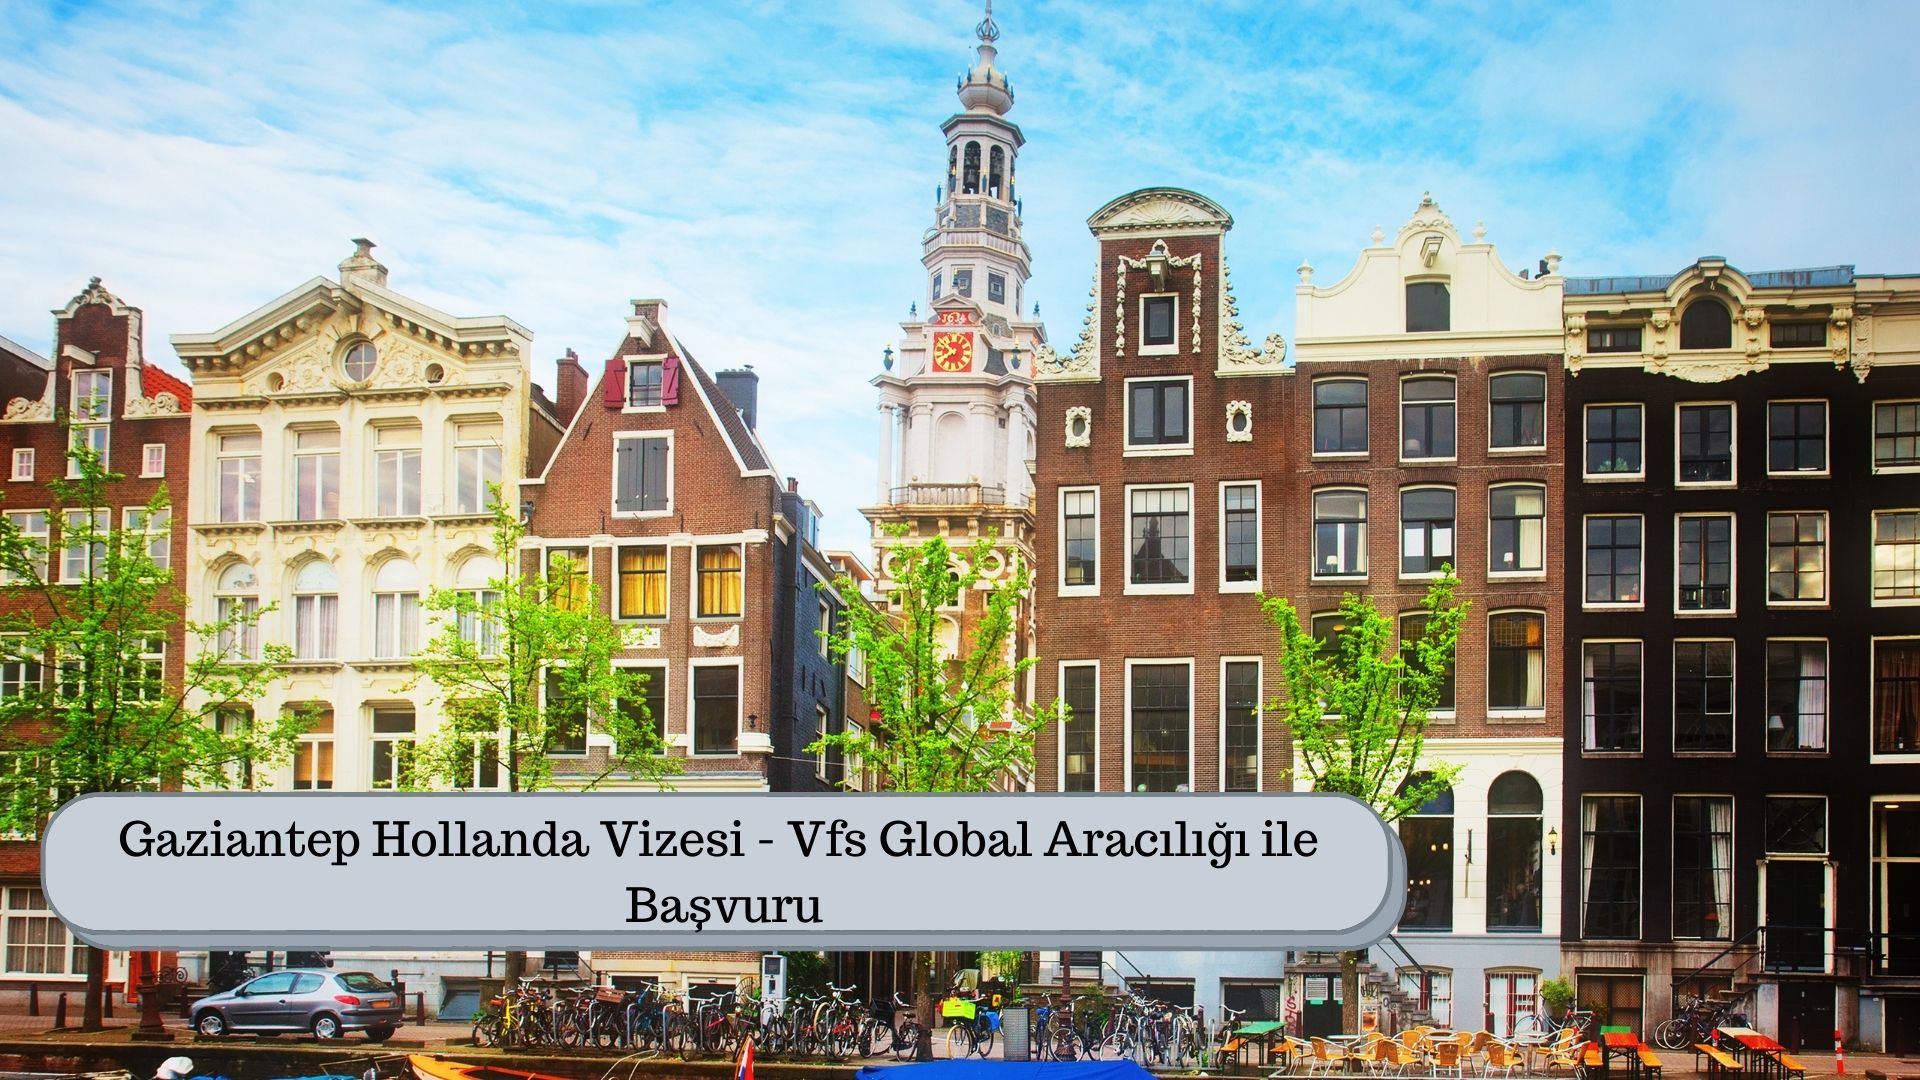 Gaziantep Hollanda Vizesi – Vfs Global Aracılığı ile Başvuru